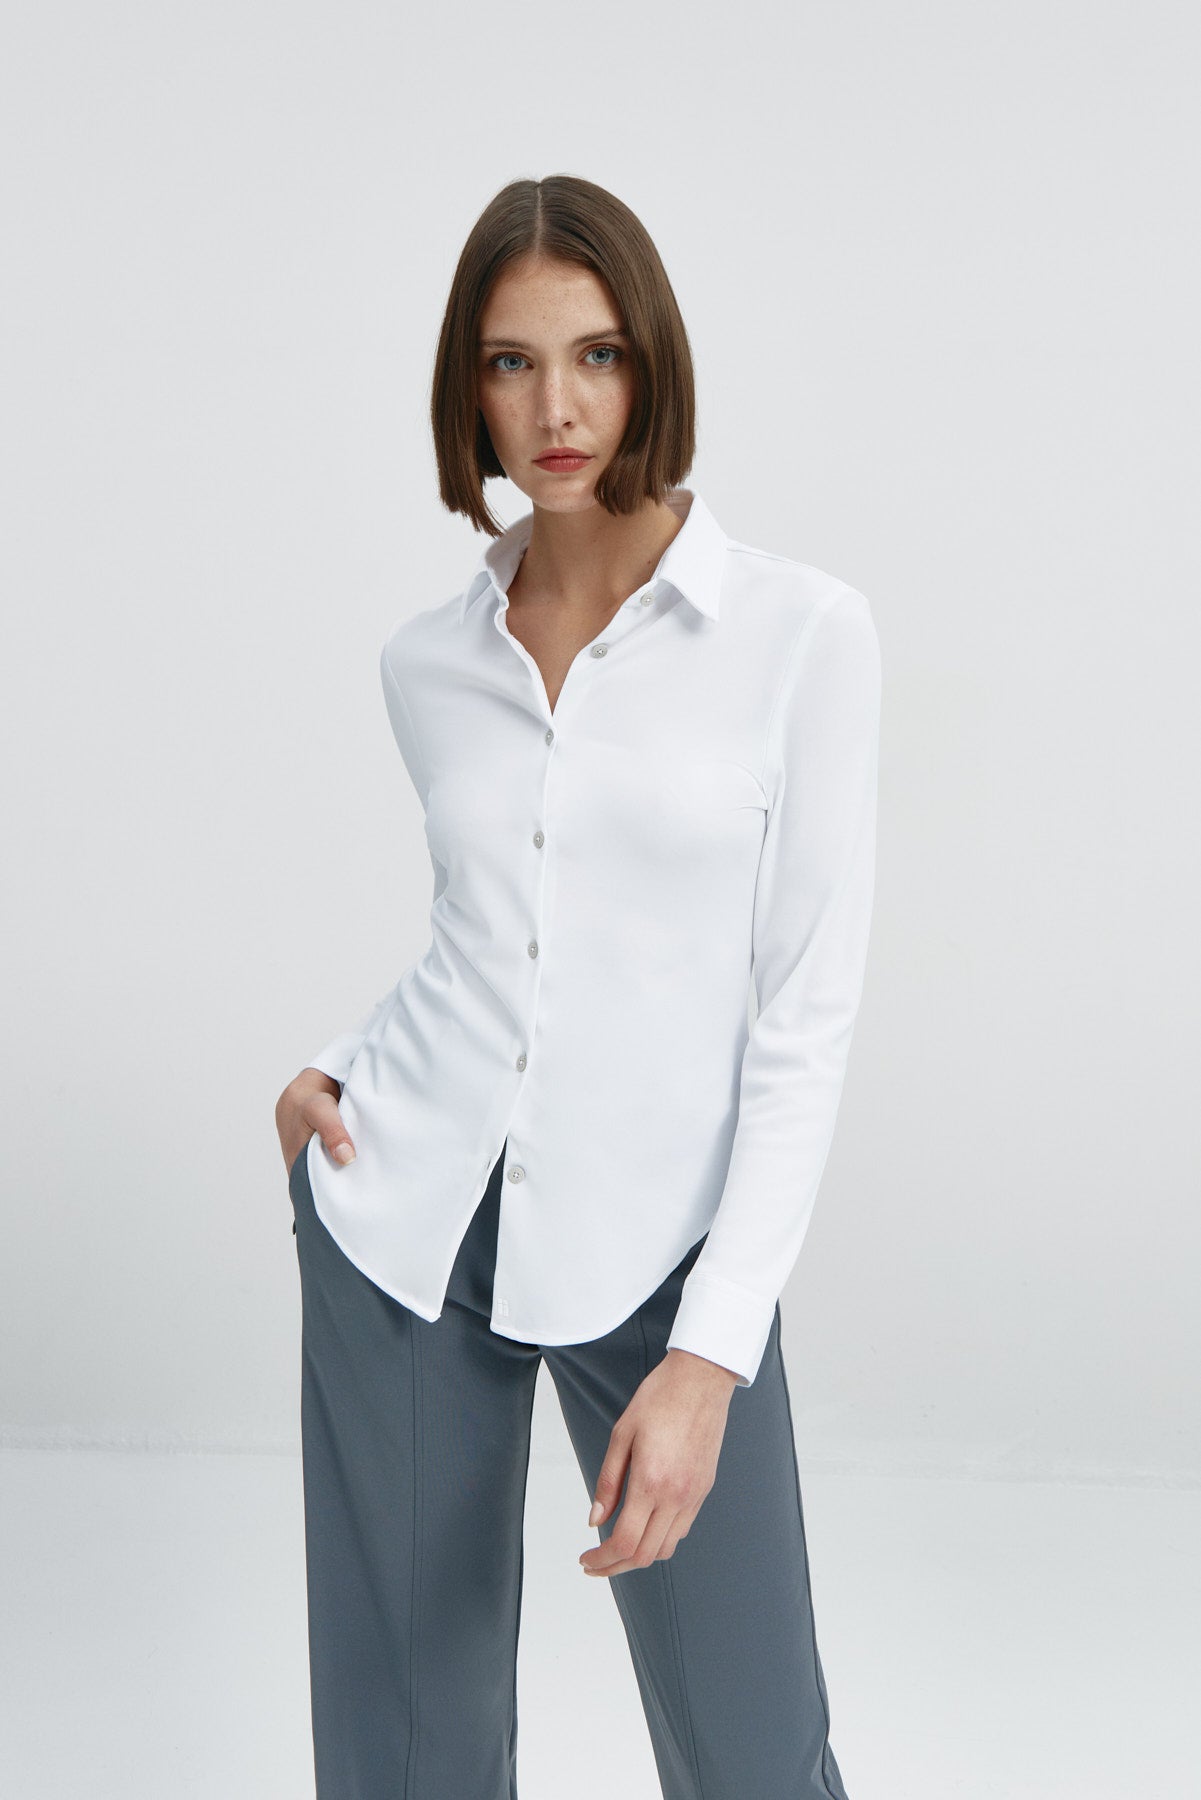  Camisa para mujer slim color blanco, básica y versátil. Foto frente